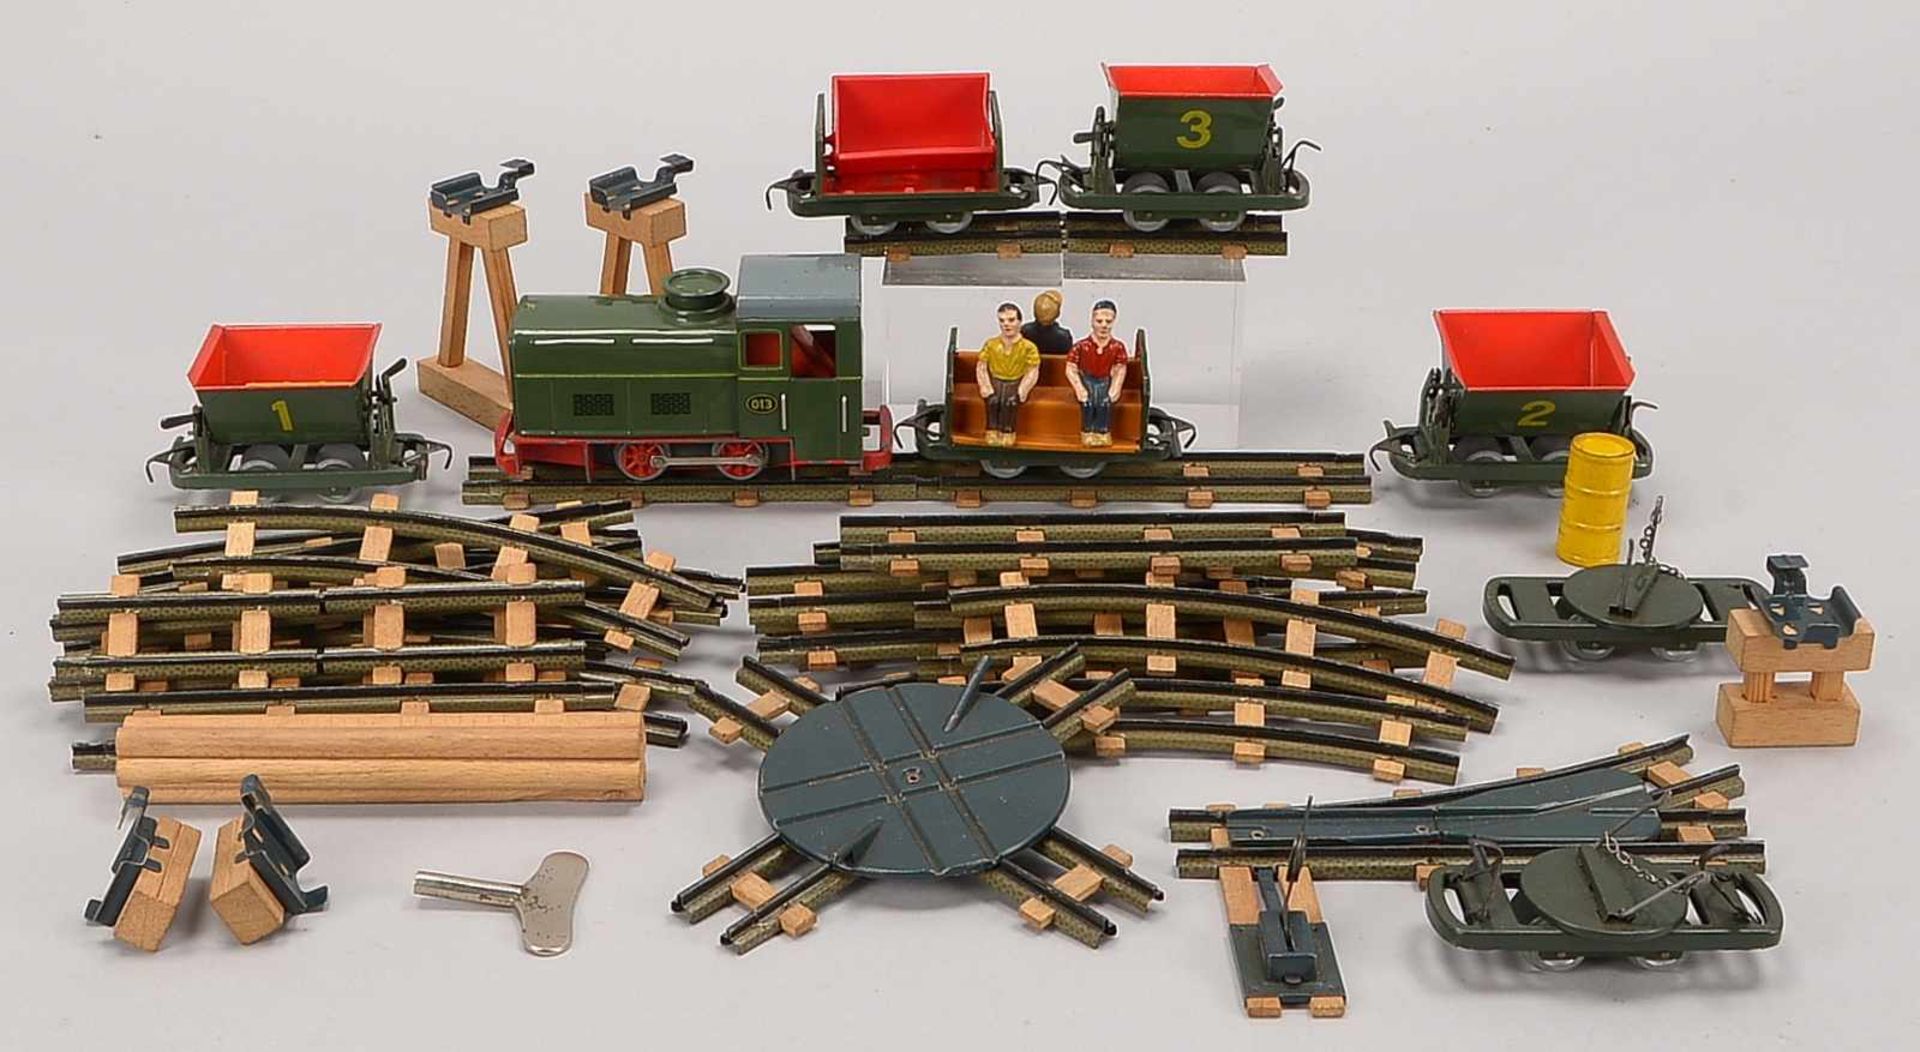 Modelleisenbahn-Konvolut, 1950er Jahre, 'Bing', Blech, umfassend: Lok, Loren und Personenwagen; dazu